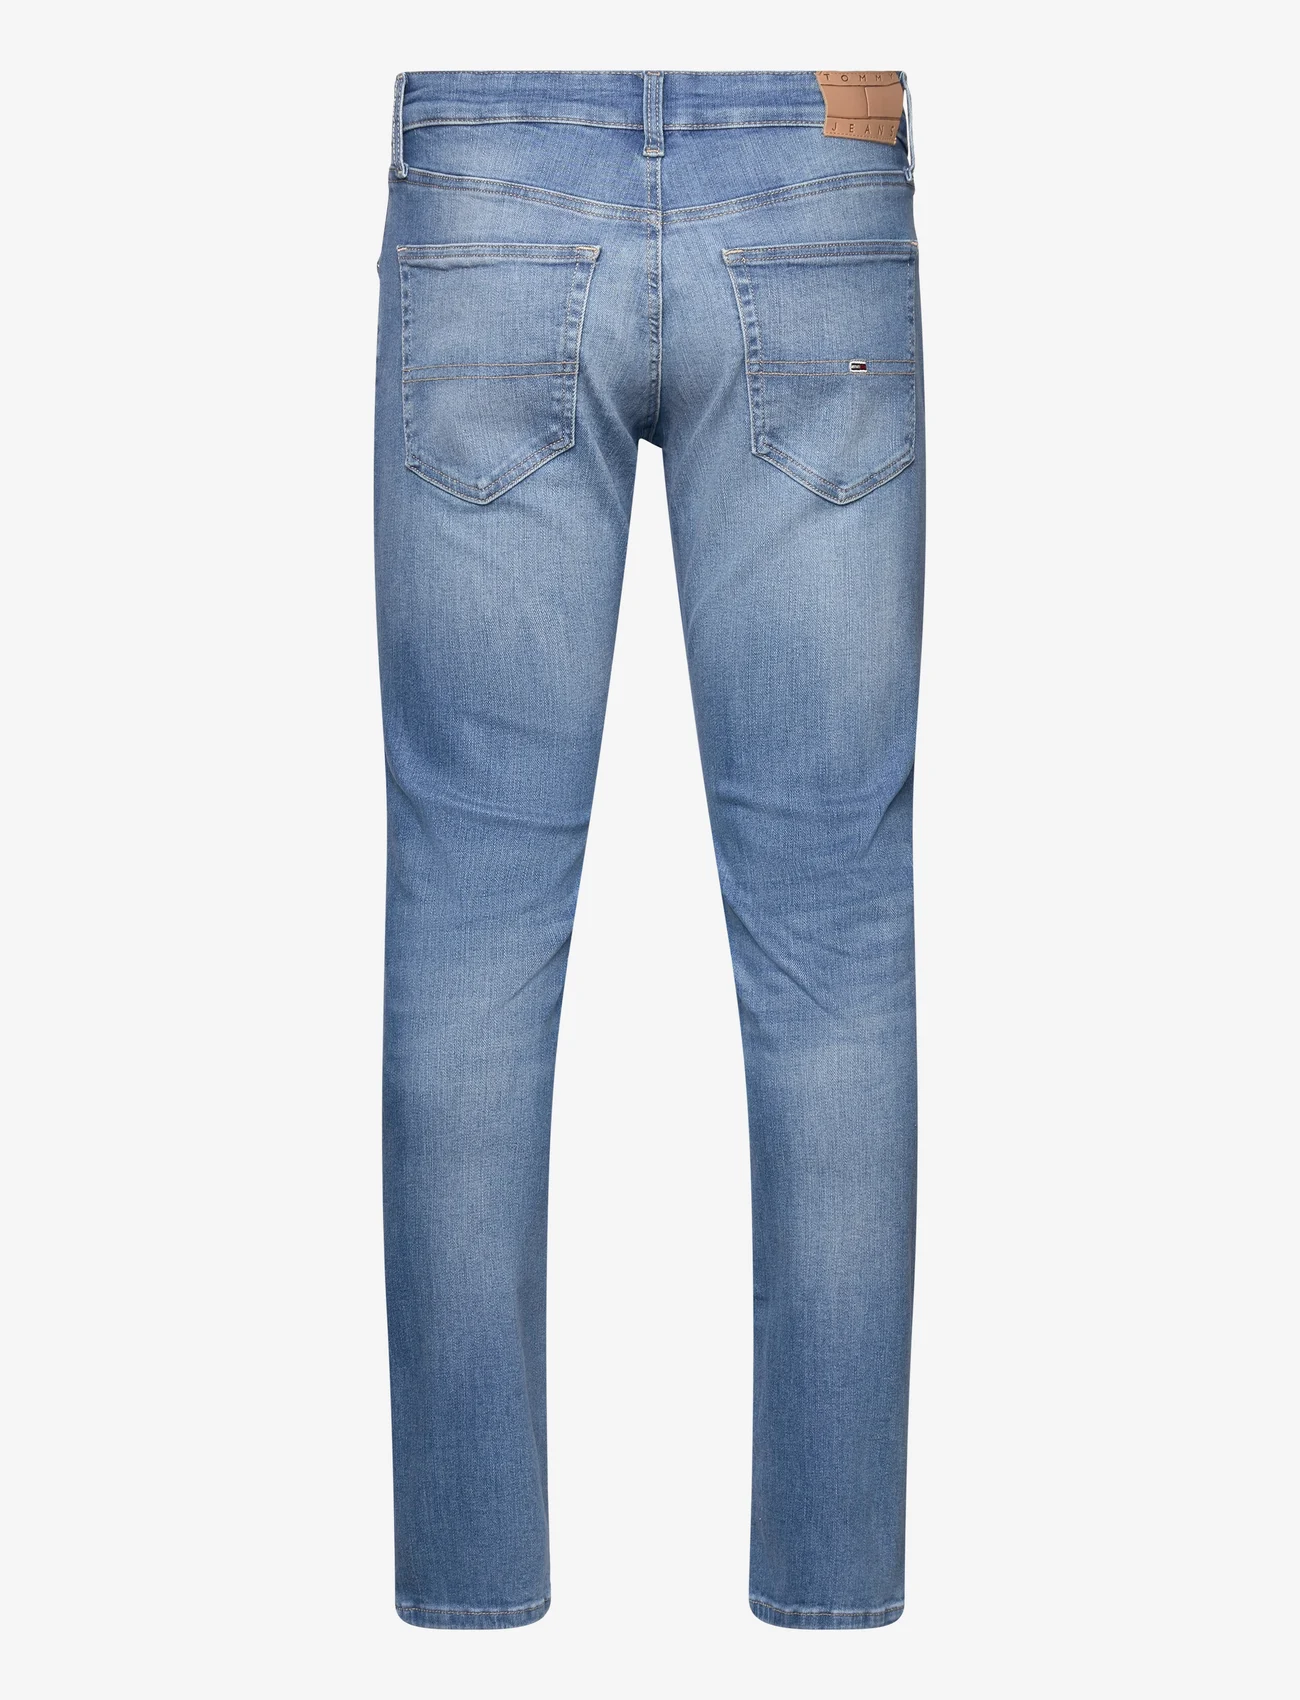 Tommy Jeans - SCANTON SLIM AH1236 - slim jeans - denim medium - 1